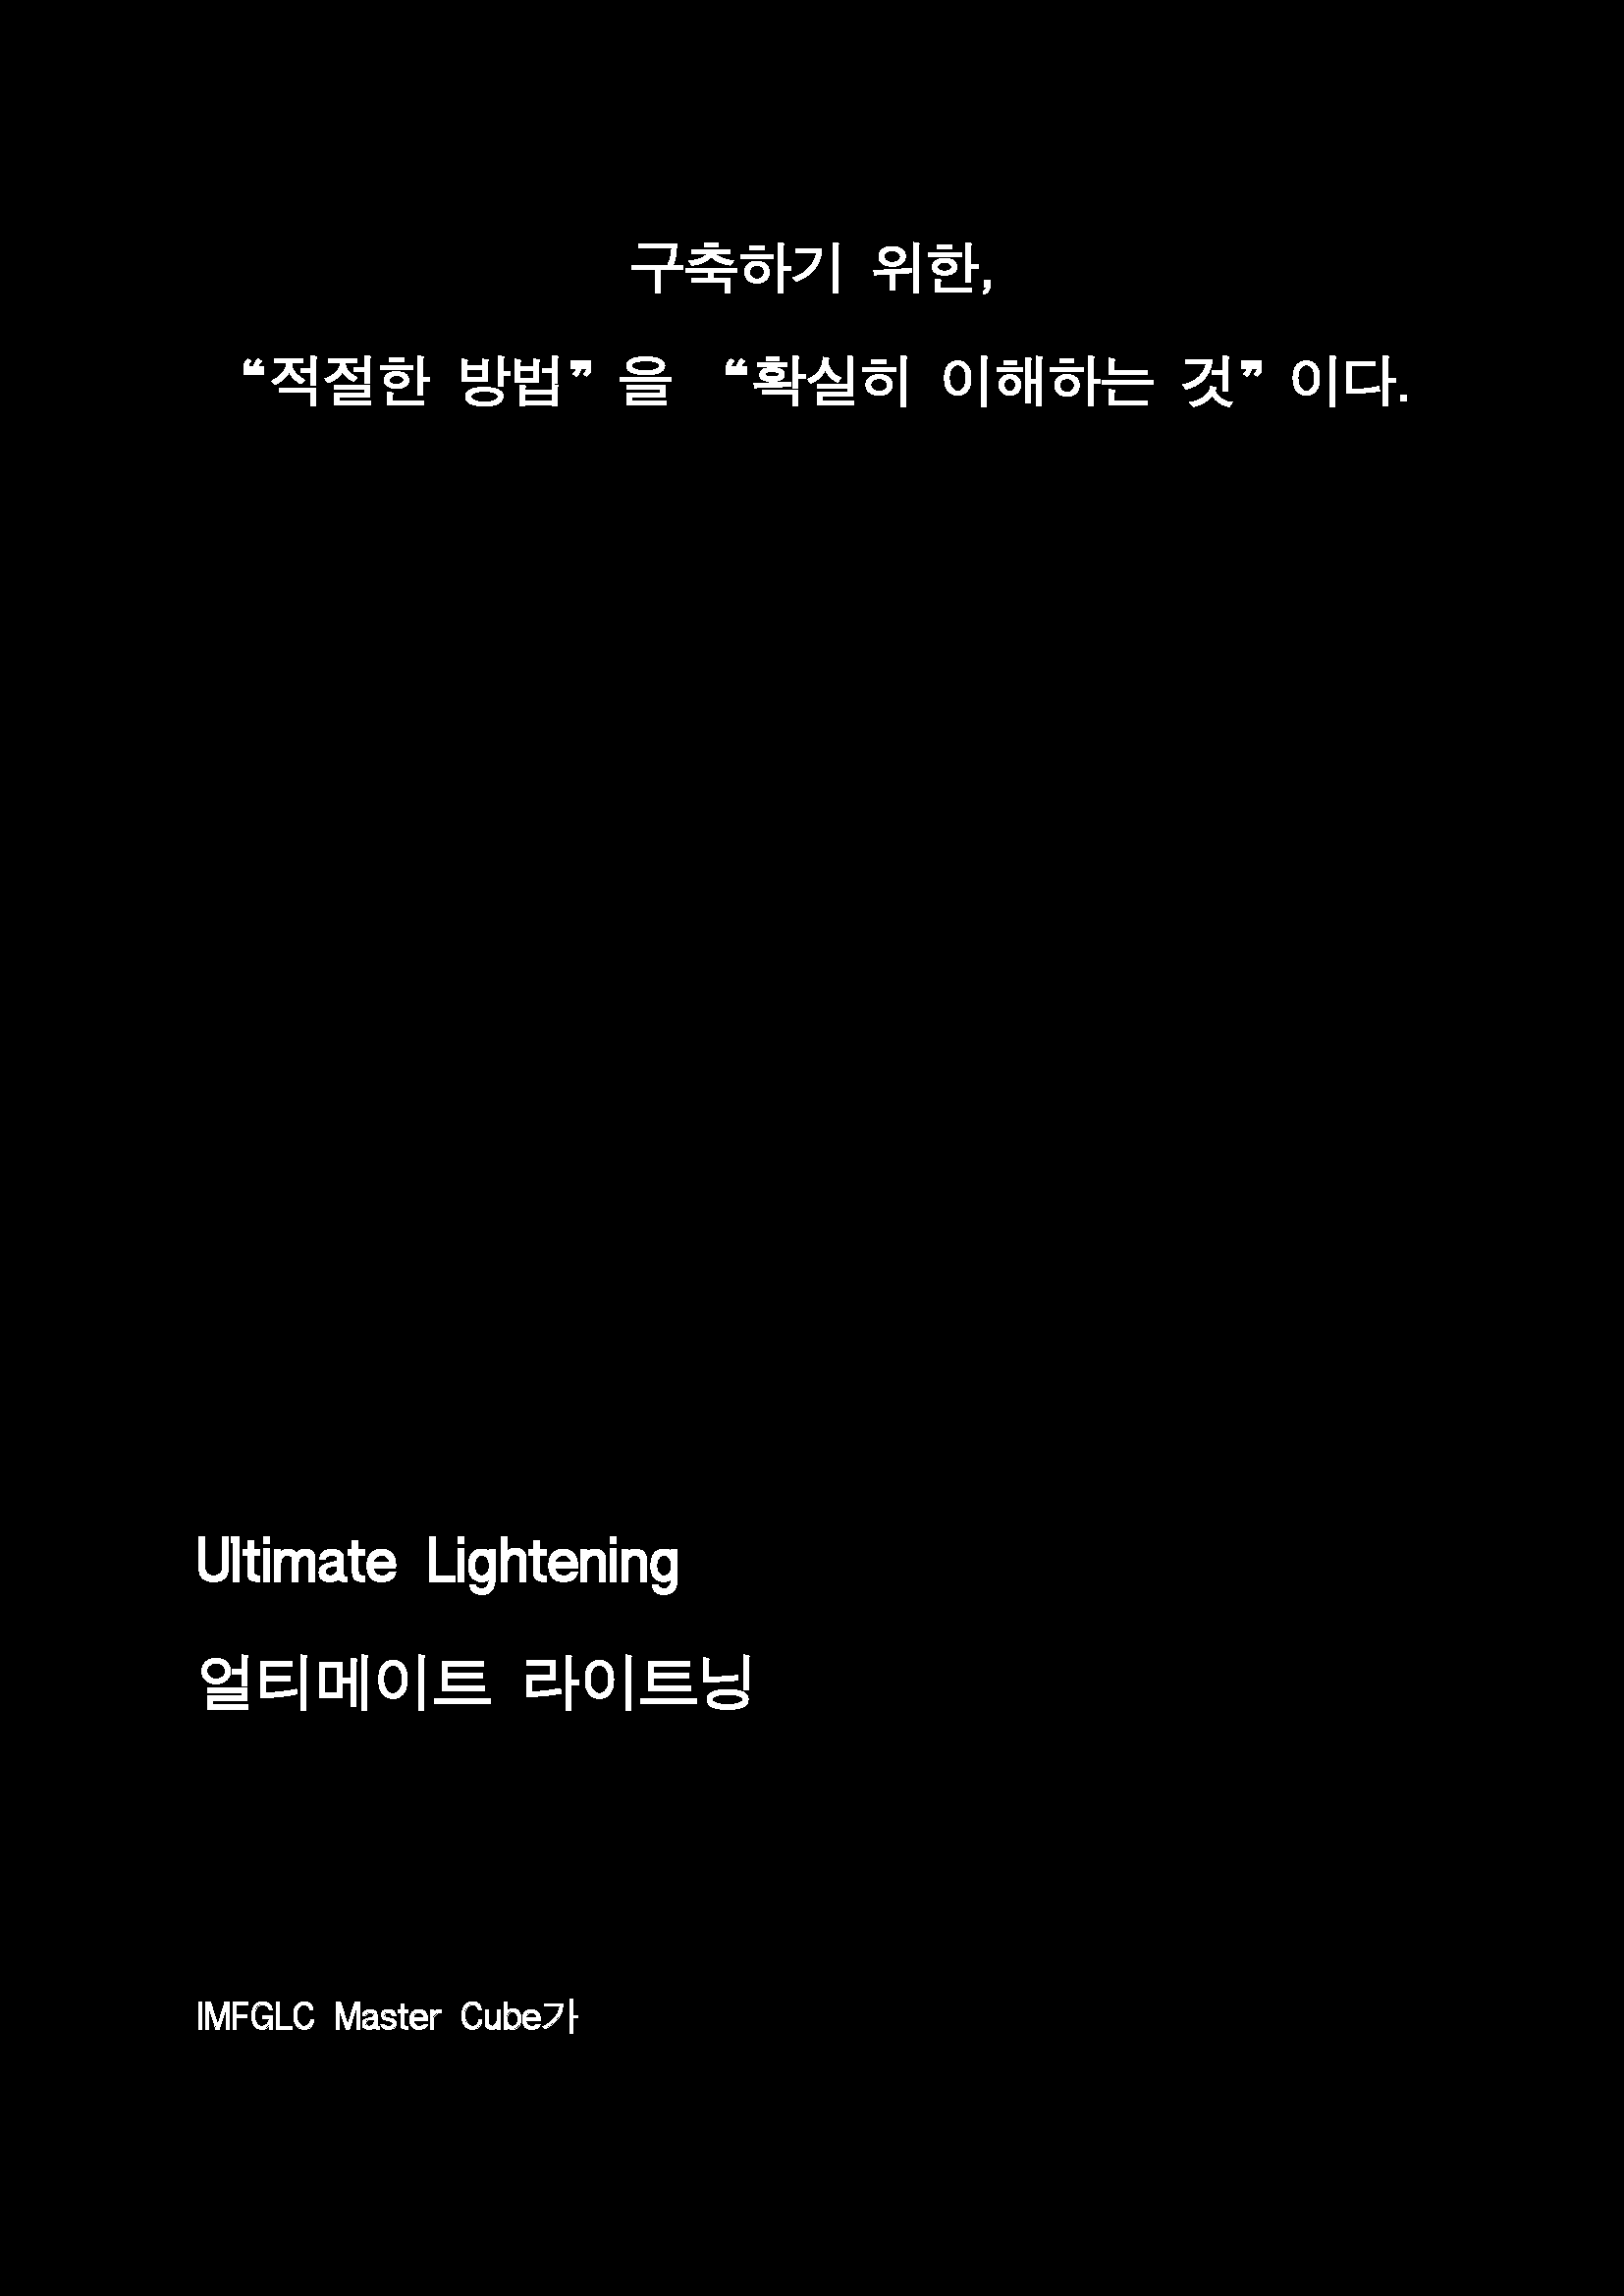 제 11회 Ultimate Lightening(진짜)_페이지_06.png